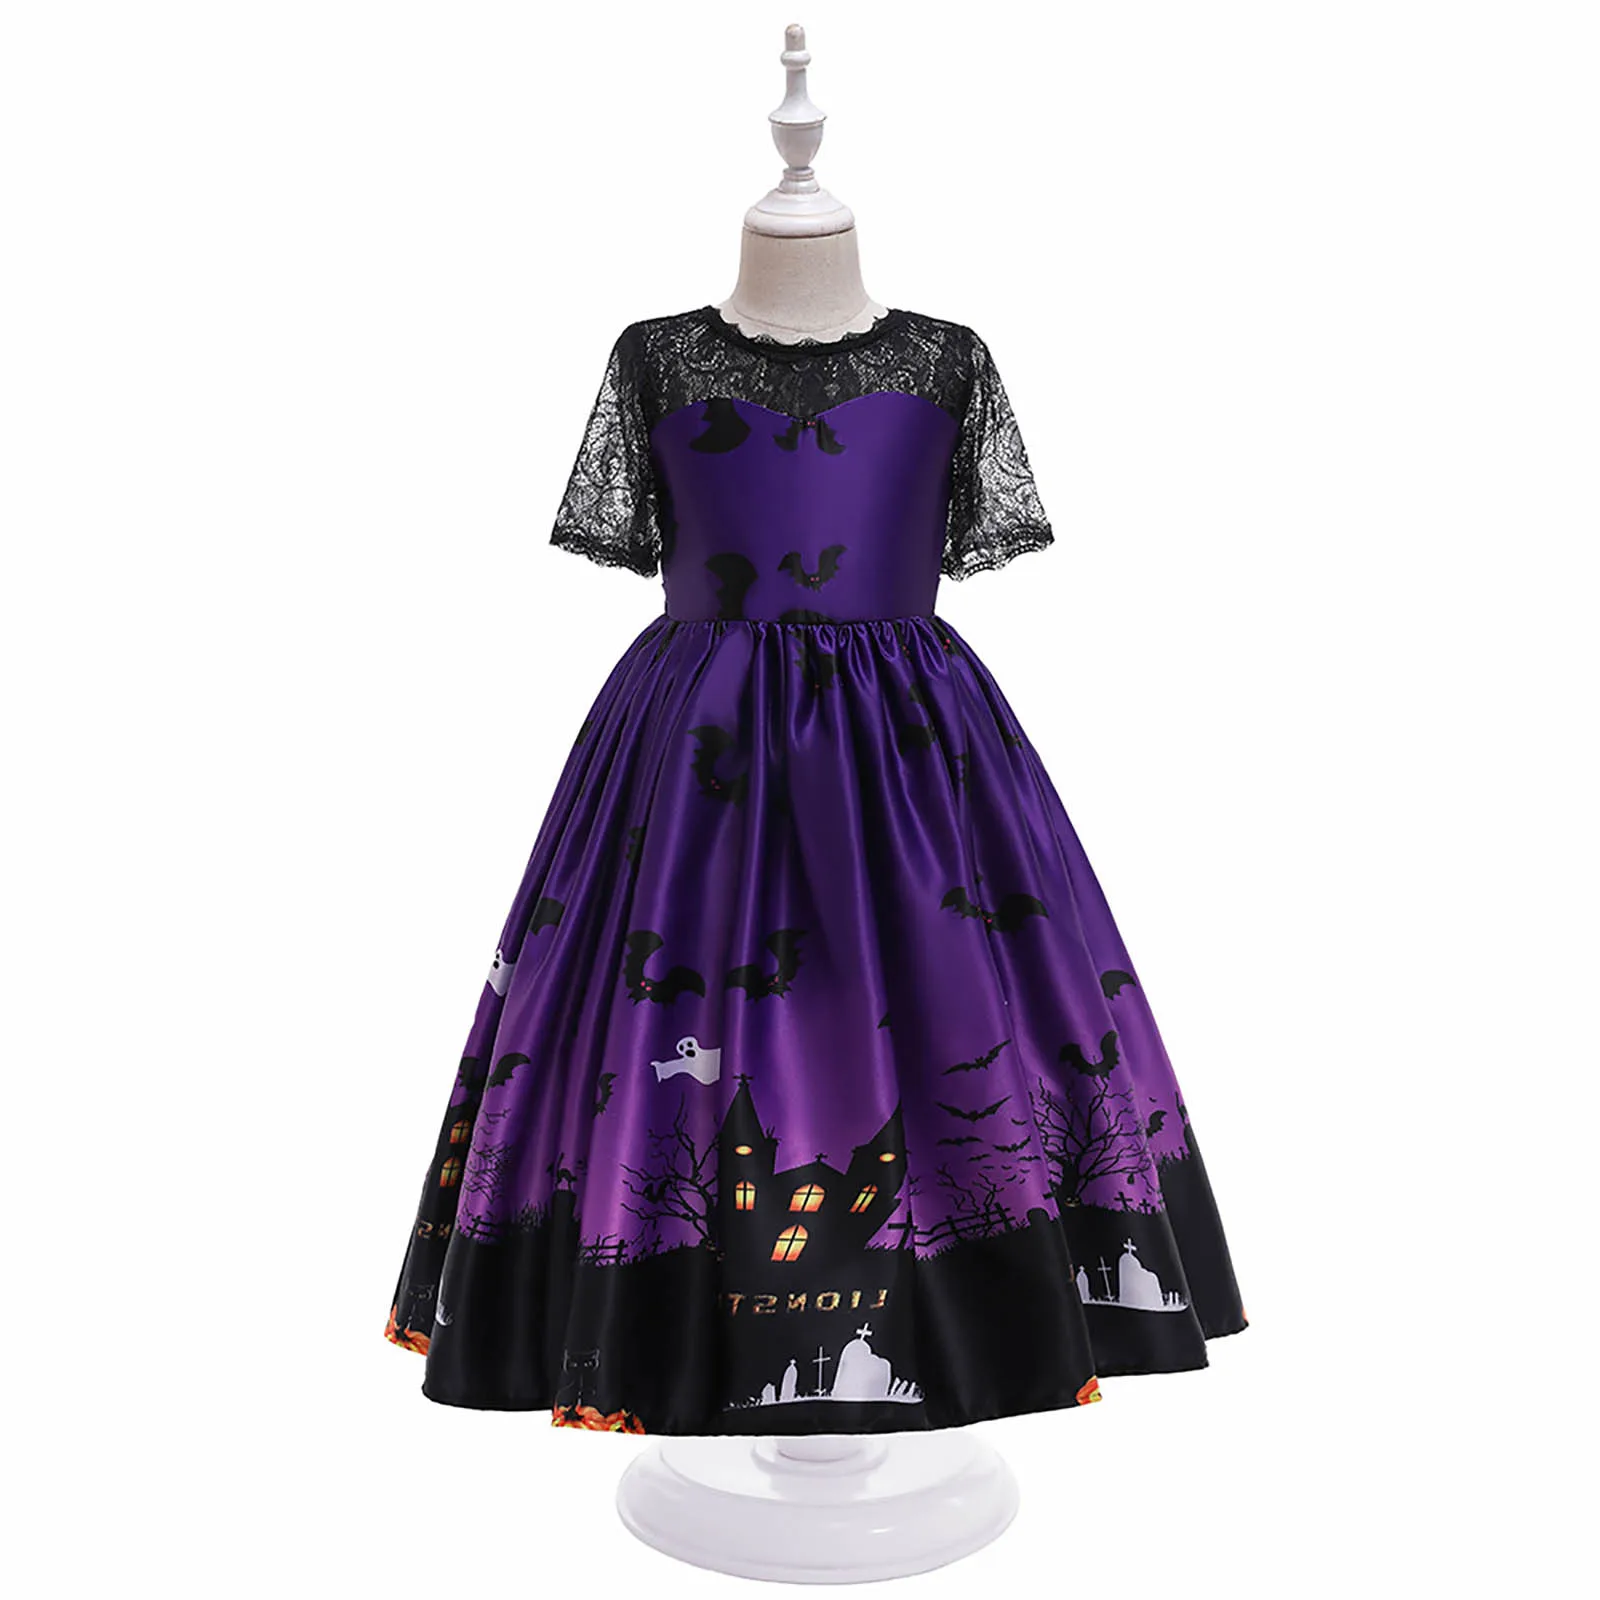 Çocuk Kız Cadılar Bayramı Elbise süslü elbise Kostümleri Kabak Baskı Dantel Patchwork Saten Elbise Prenses Elbise Akşam Parti Balo elbisesi Görüntü 4